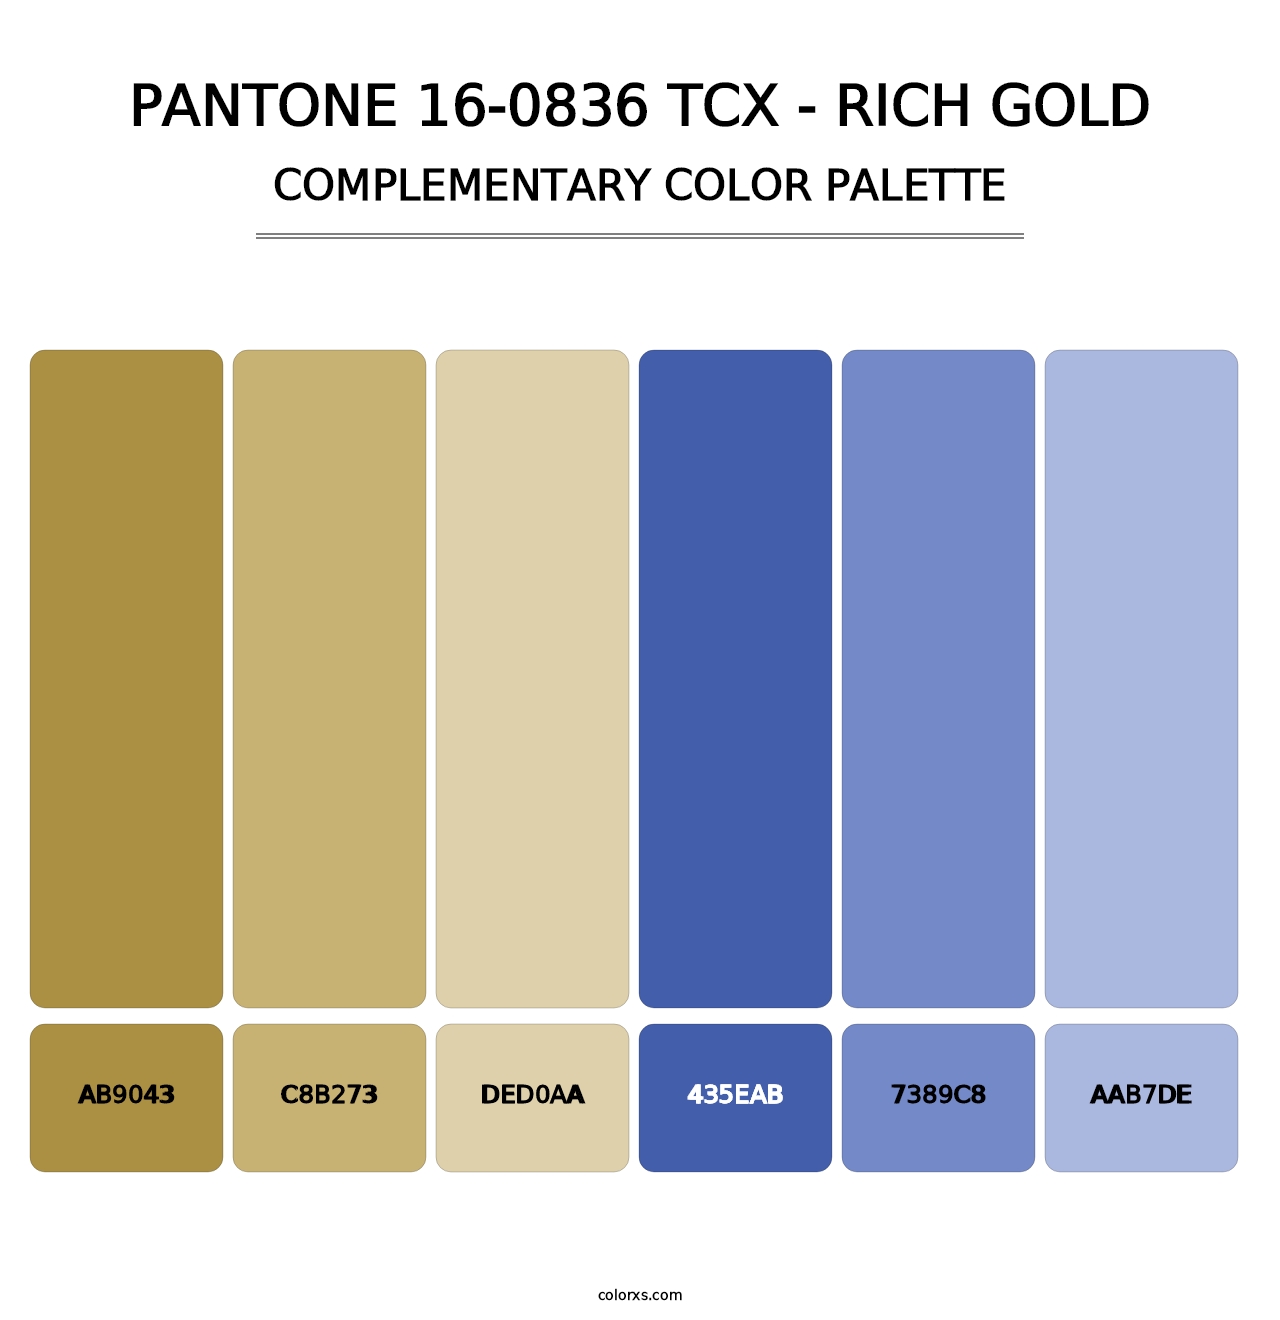 PANTONE 16-0836 TCX - Rich Gold - Complementary Color Palette